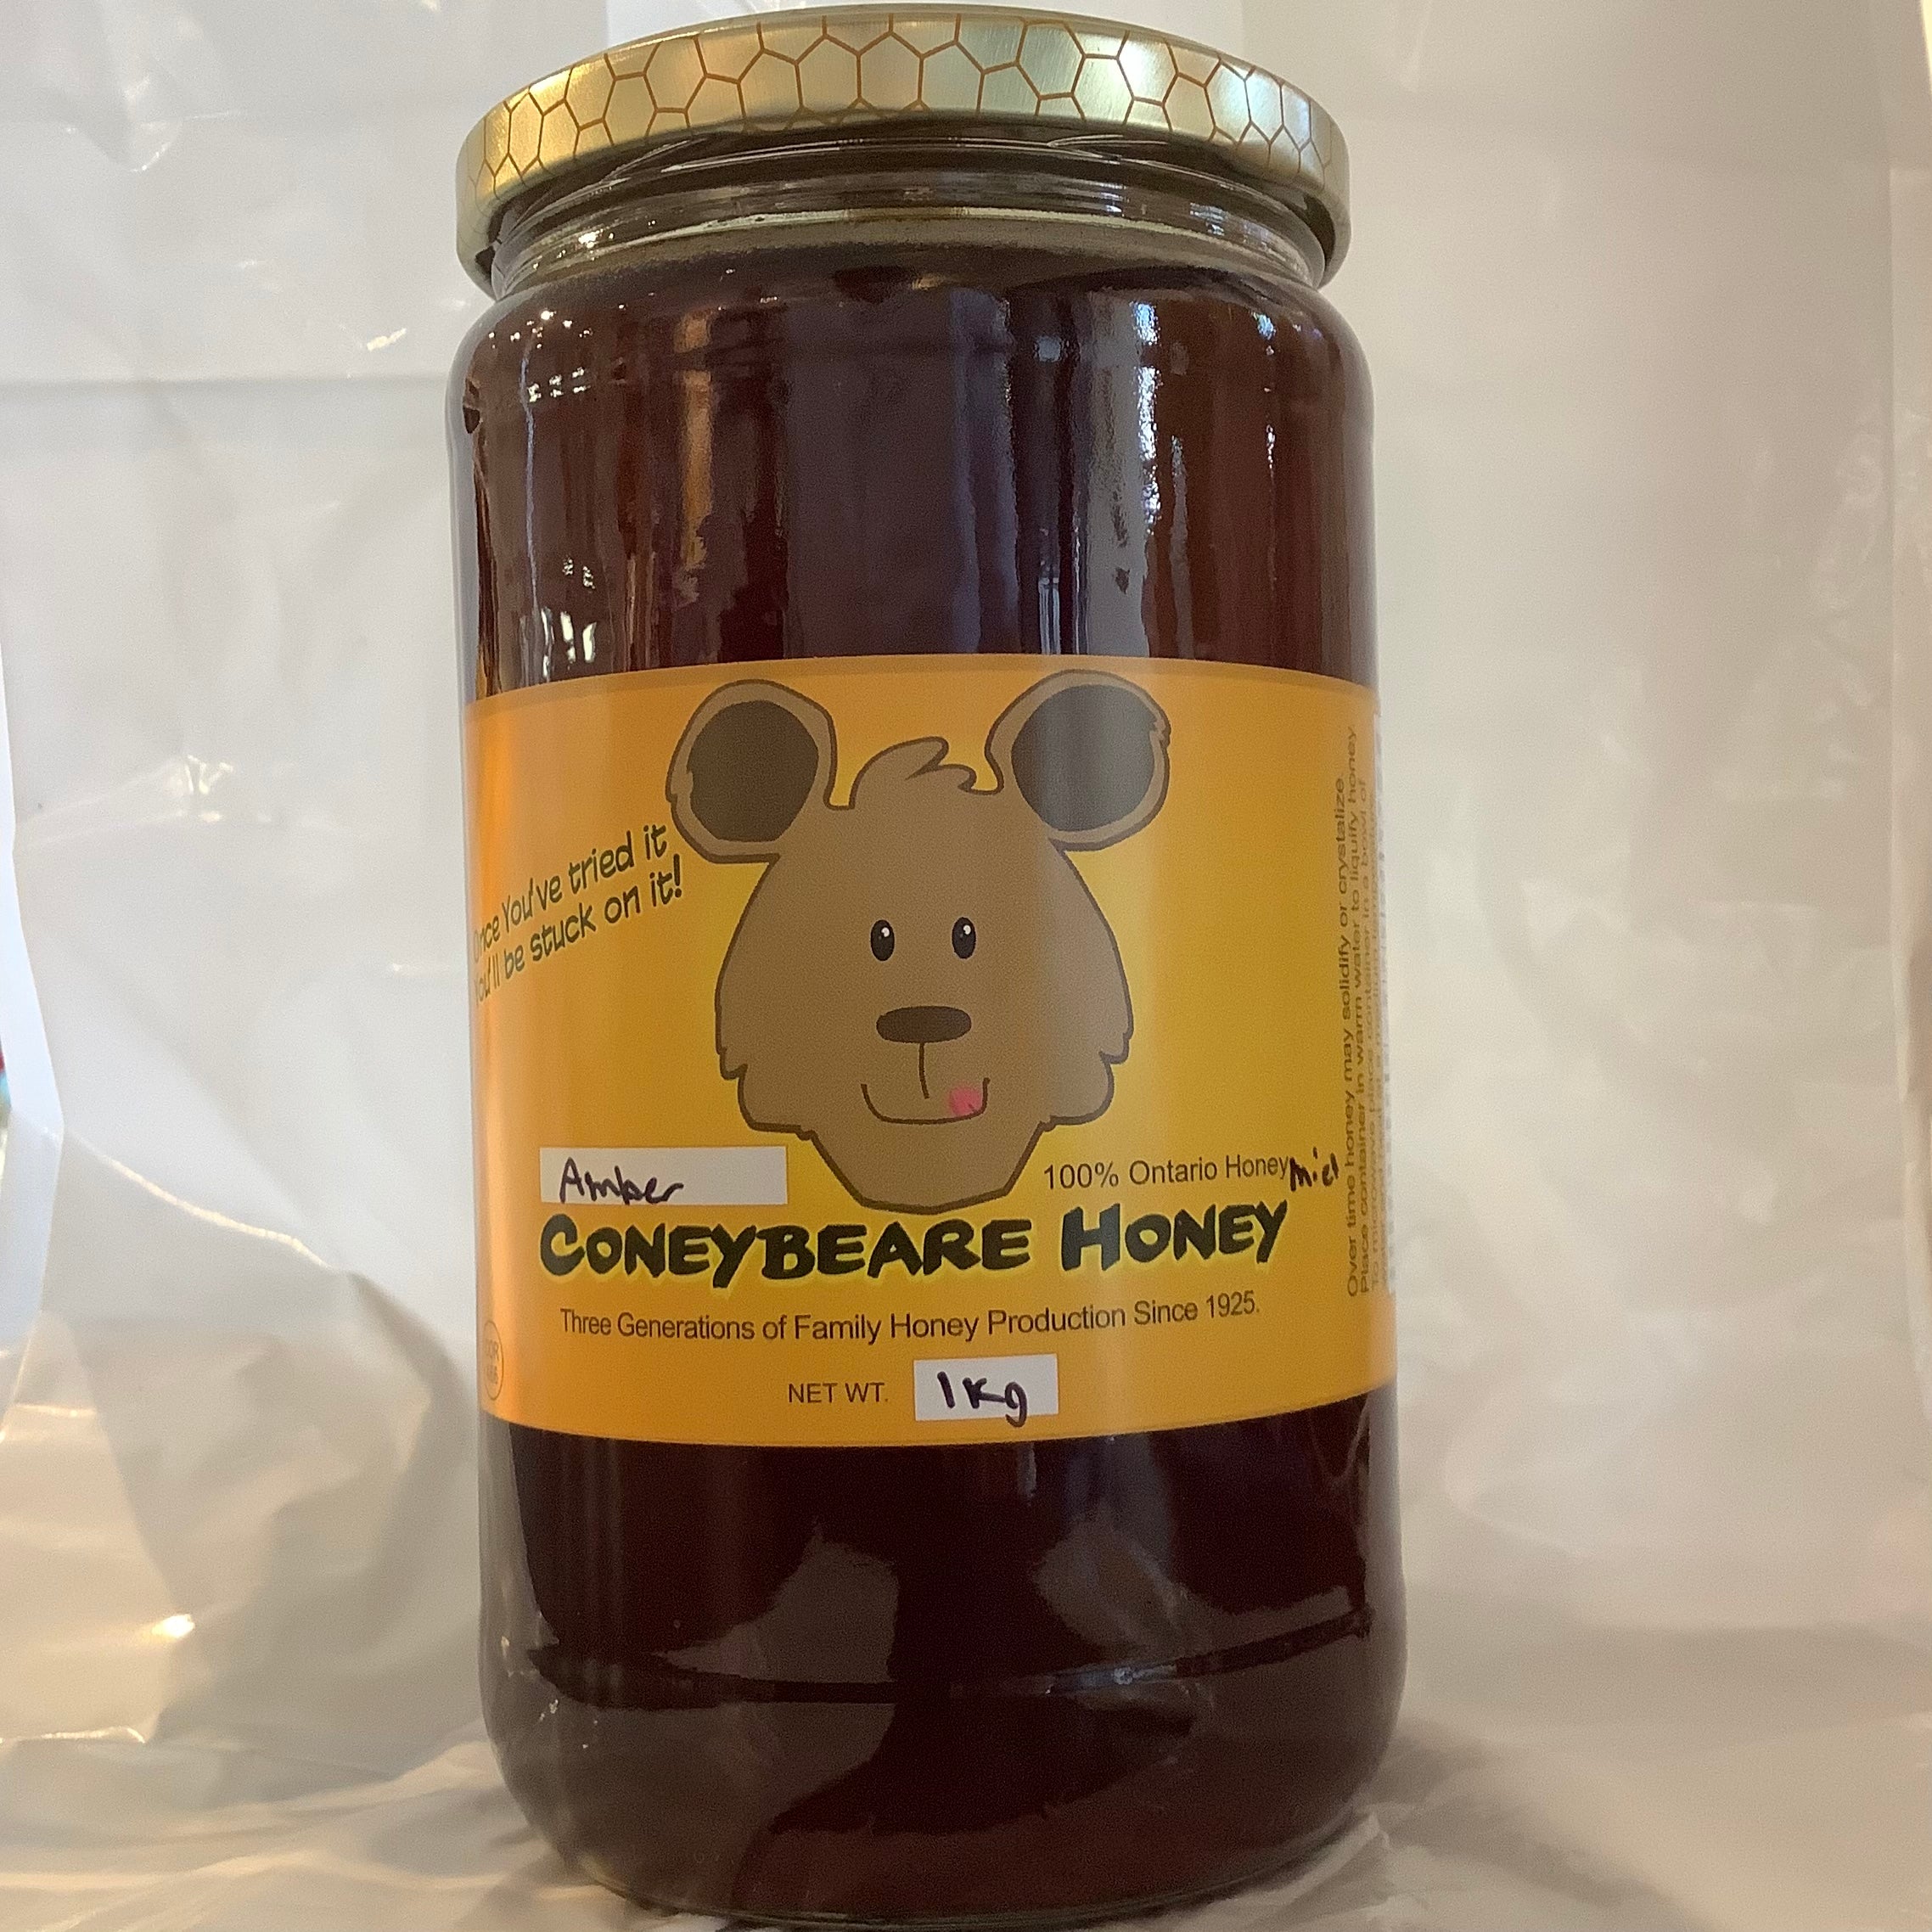 Coneybeare Amber (Buckwheat) Honey